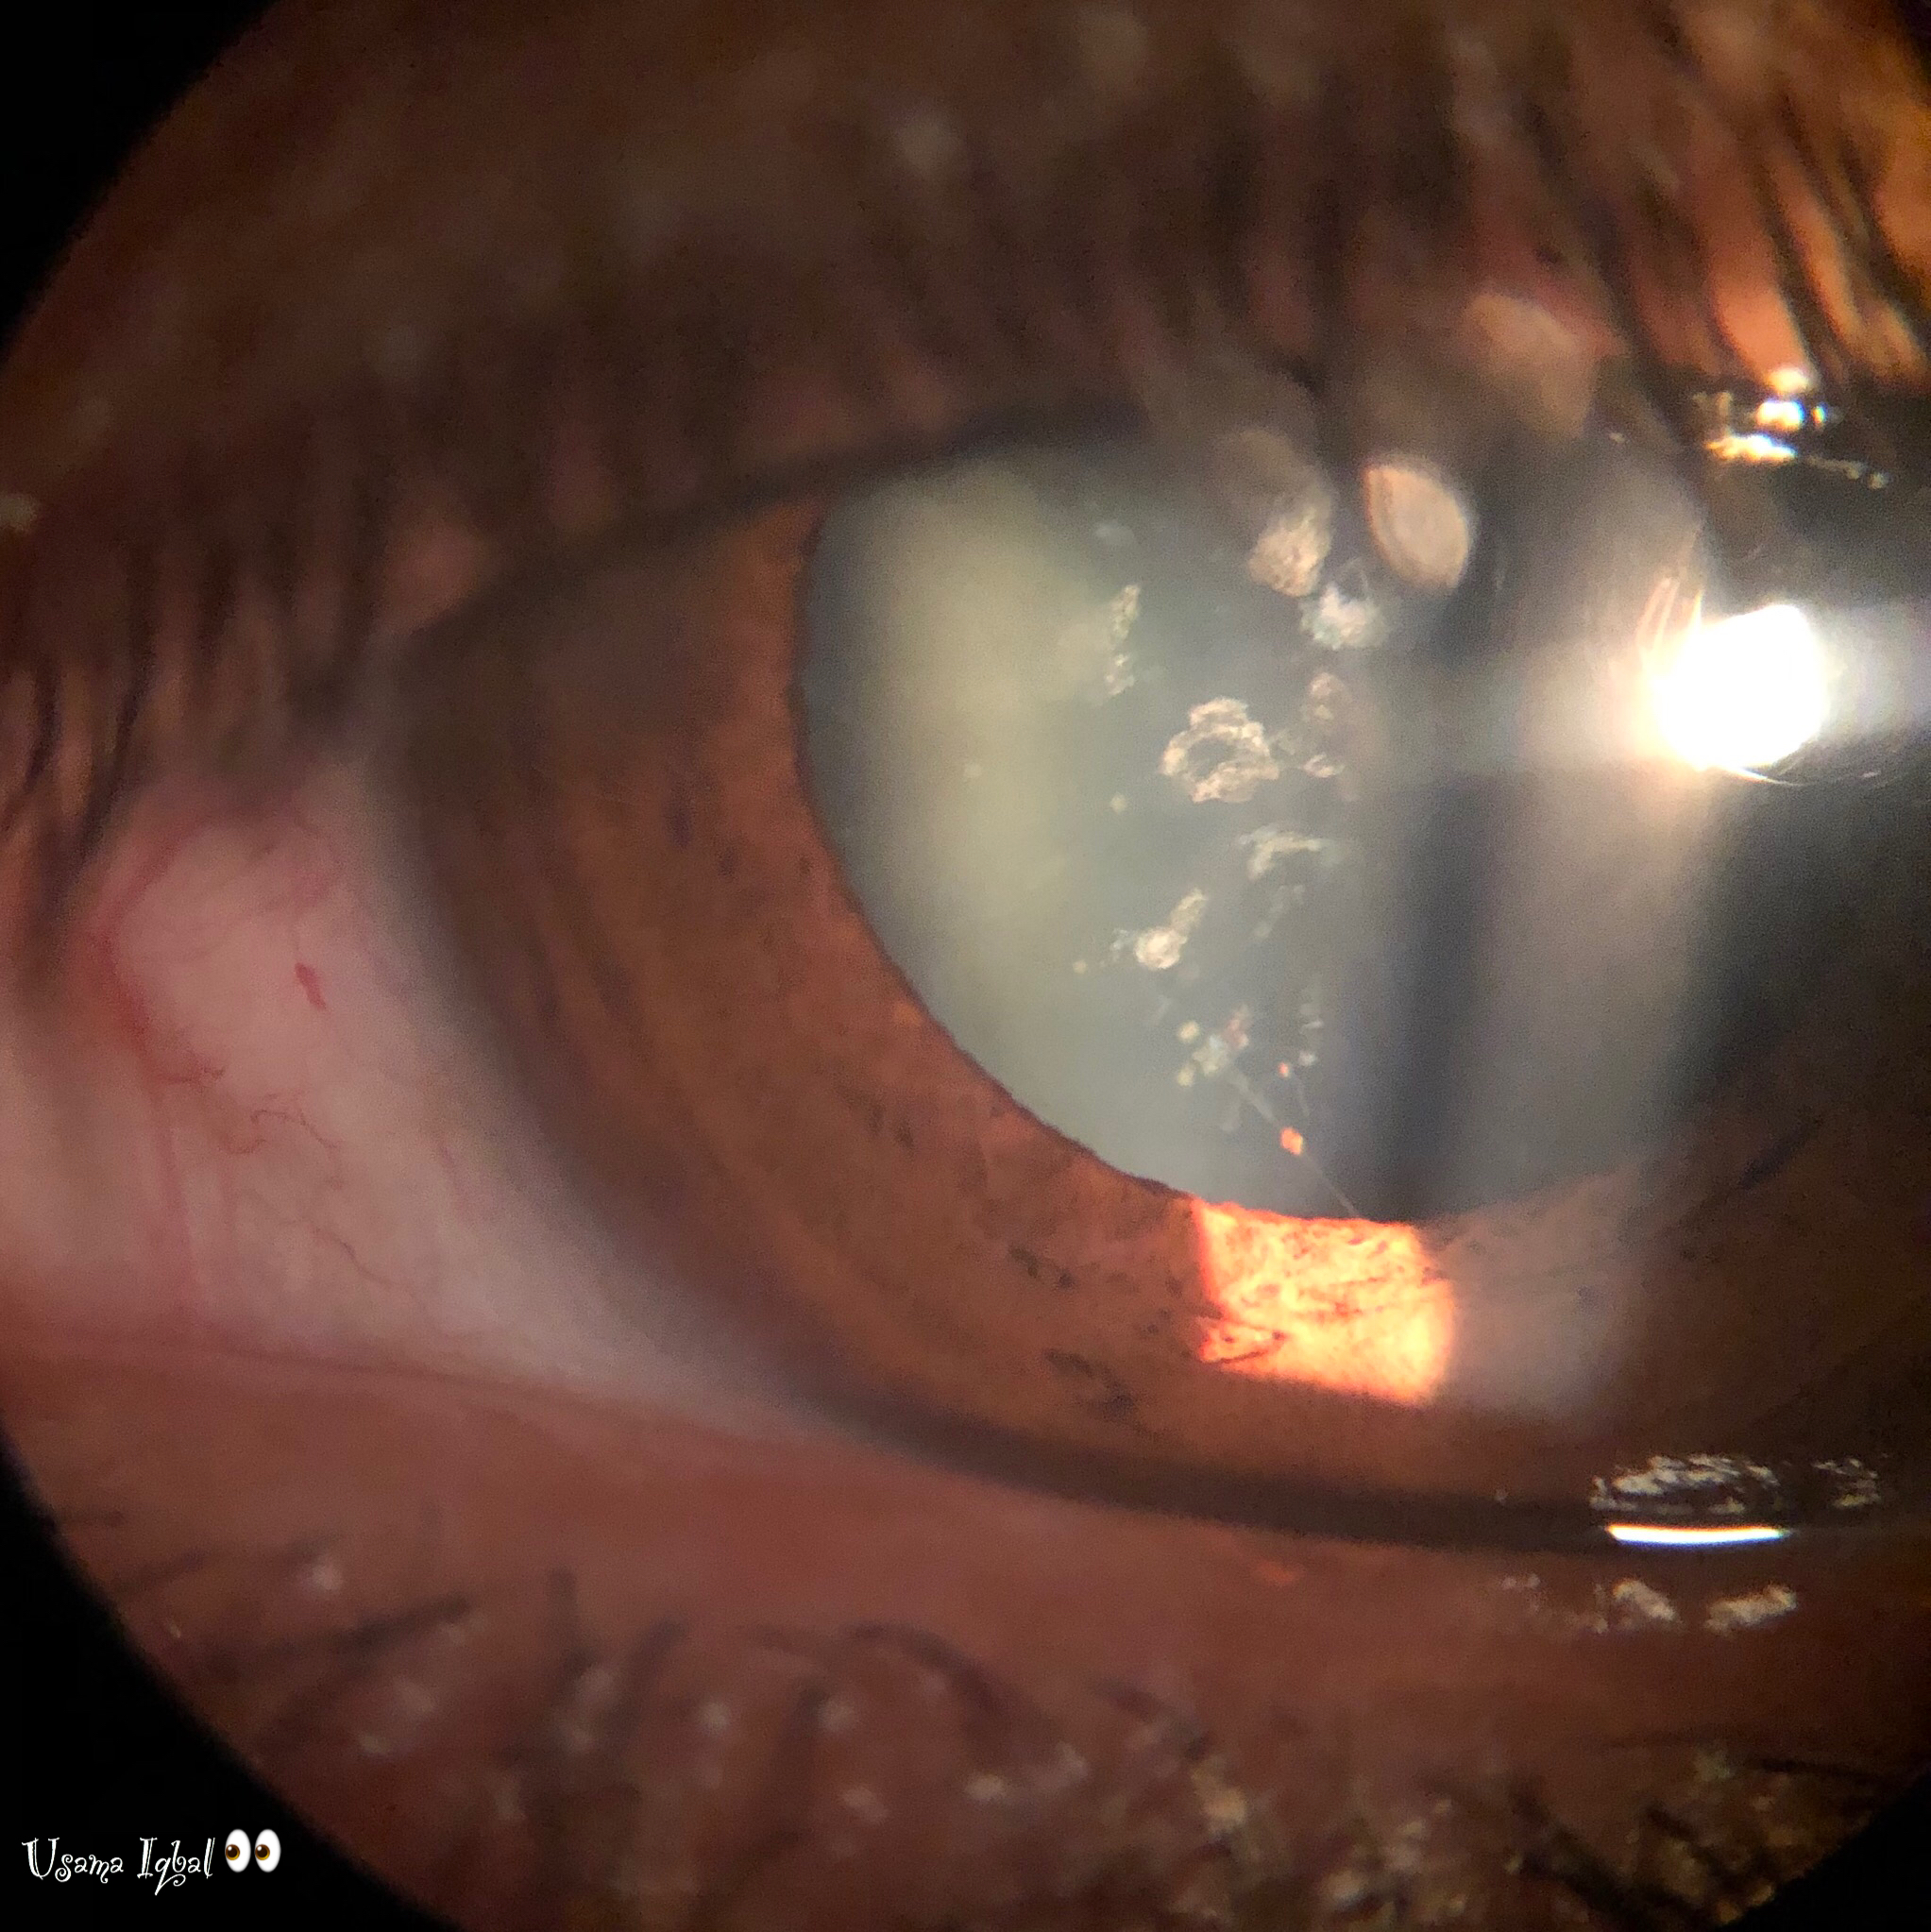 cataract congenital aao ophthalmology